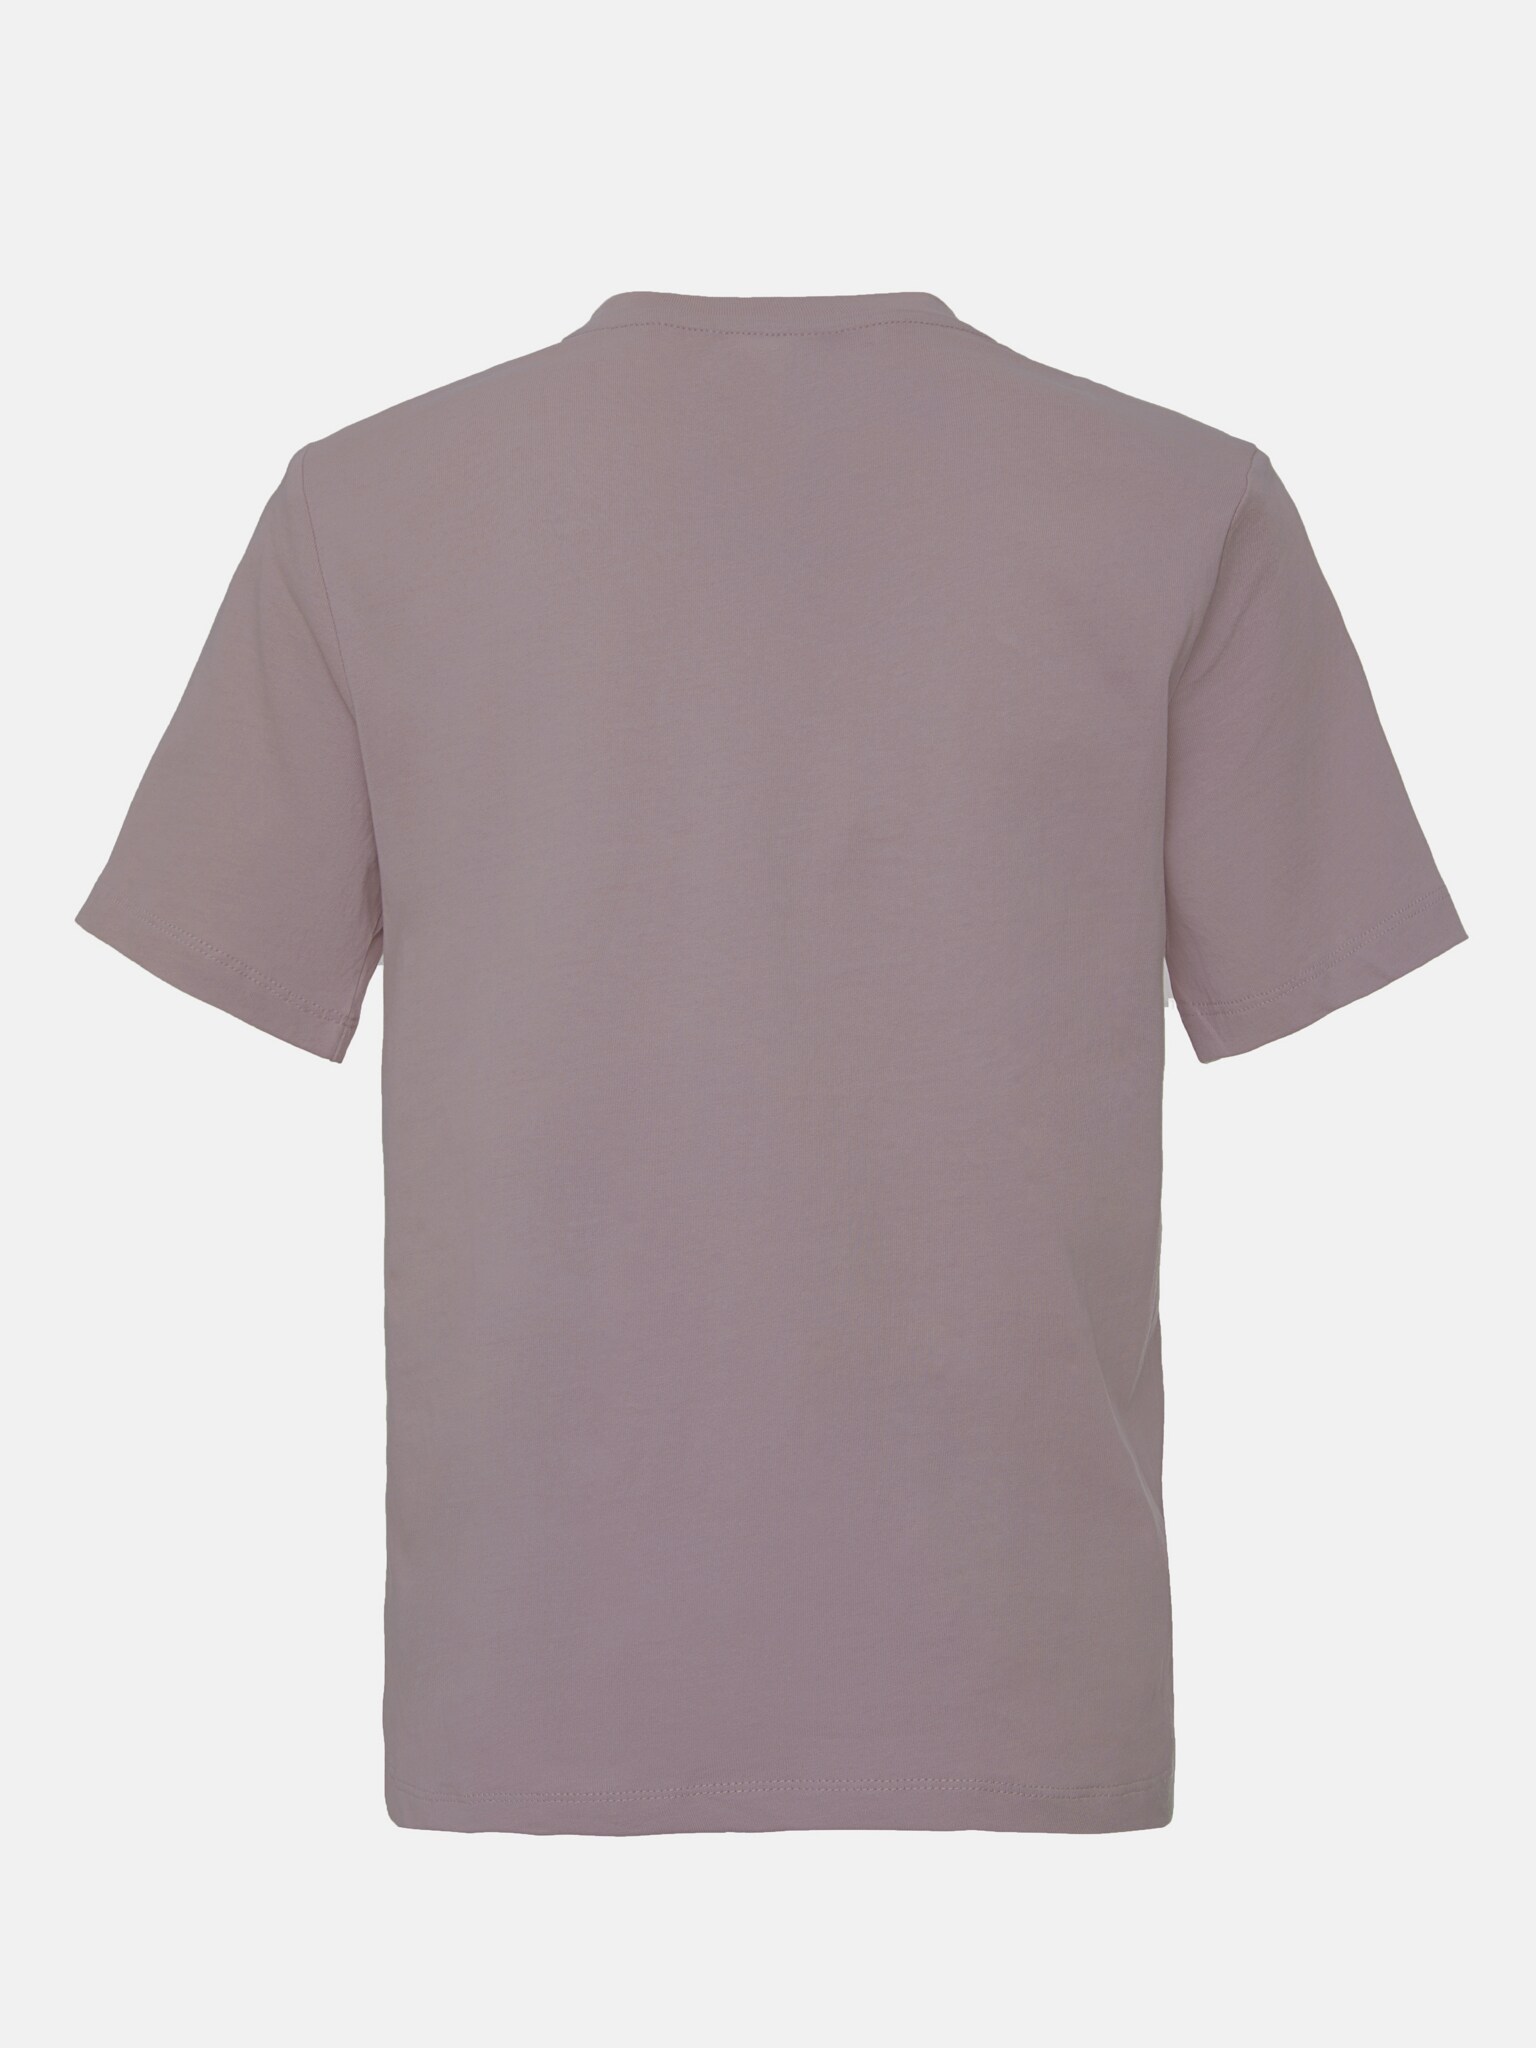 Baumwoll-T-Shirt mit Taschenverzierung